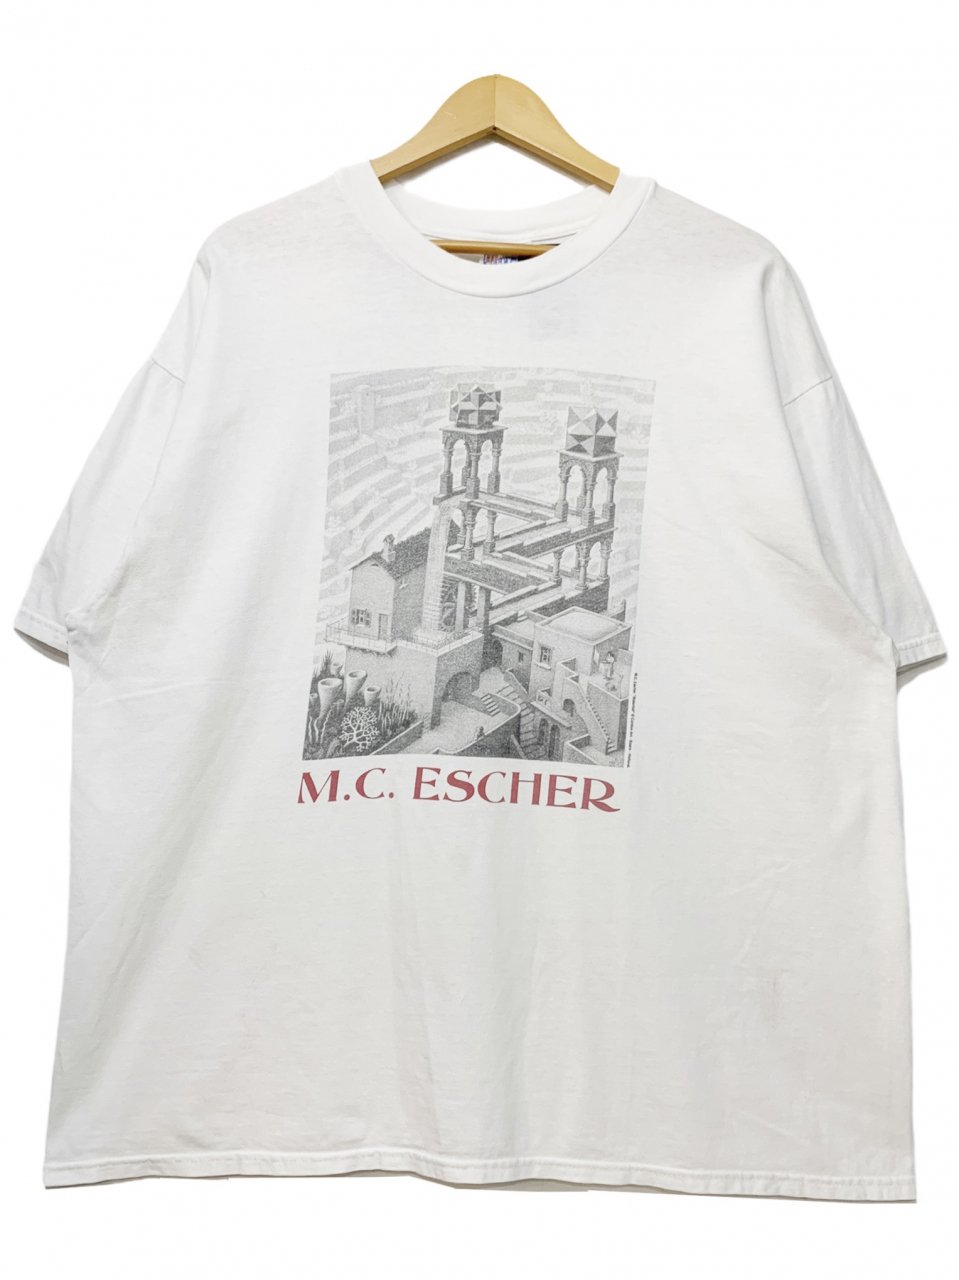 USA製 s M.C.Escher "Waterfall" Print S/S Tee 白 XL MCエッシャー